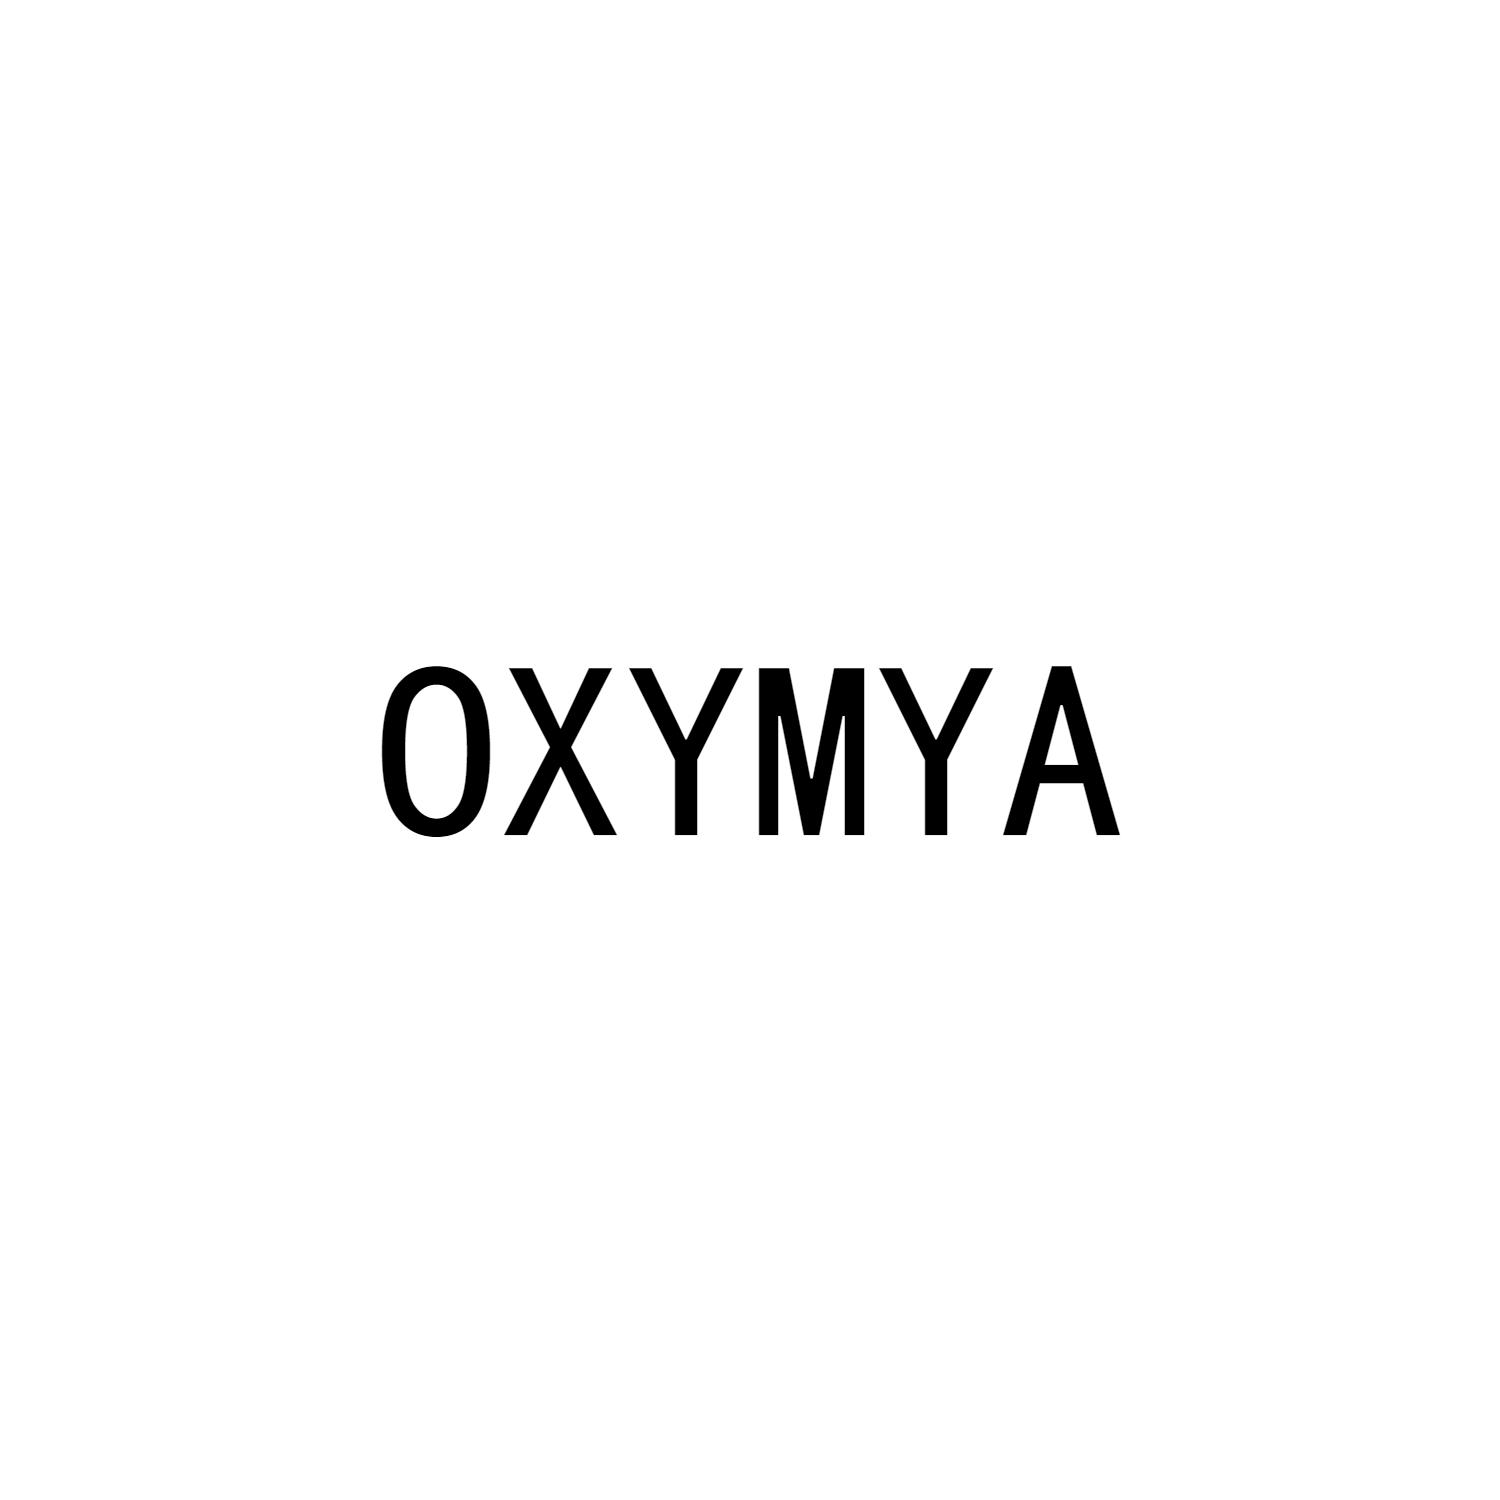 OXYMYA